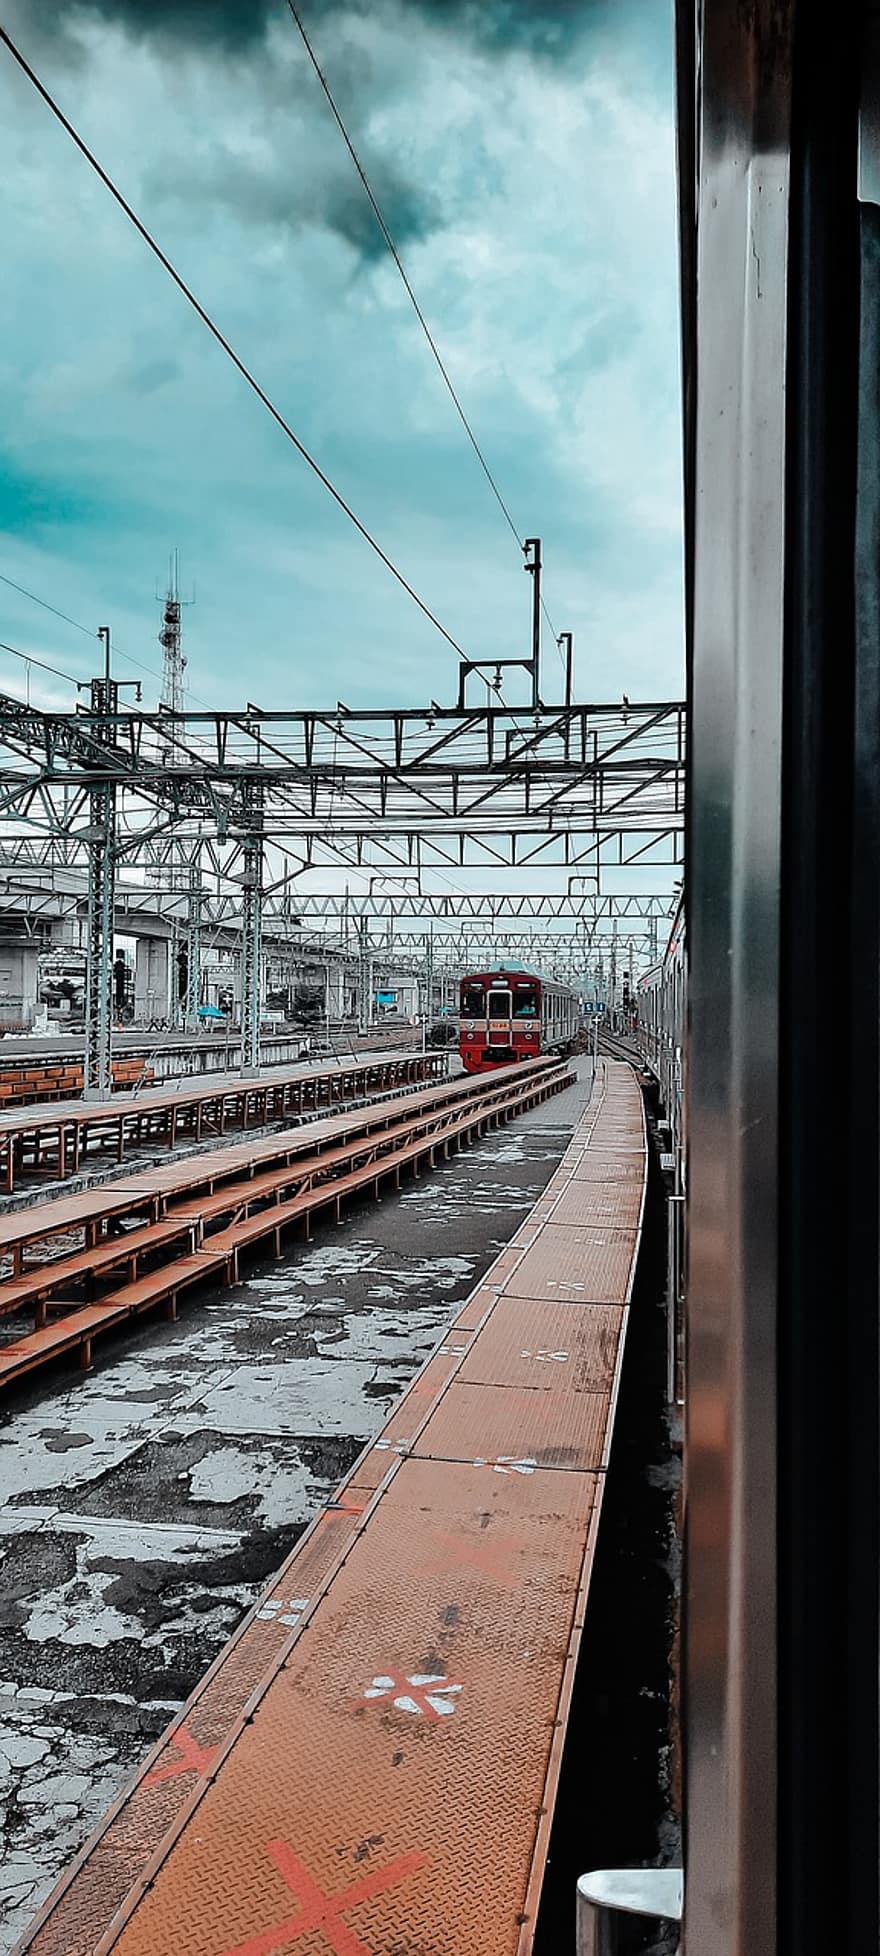 tog, skinner, jernbane, jakarta, Jakarta togstation, Manggarai jernbanestation, station, platform, Jernbanestation, togstation, jernbanesystem